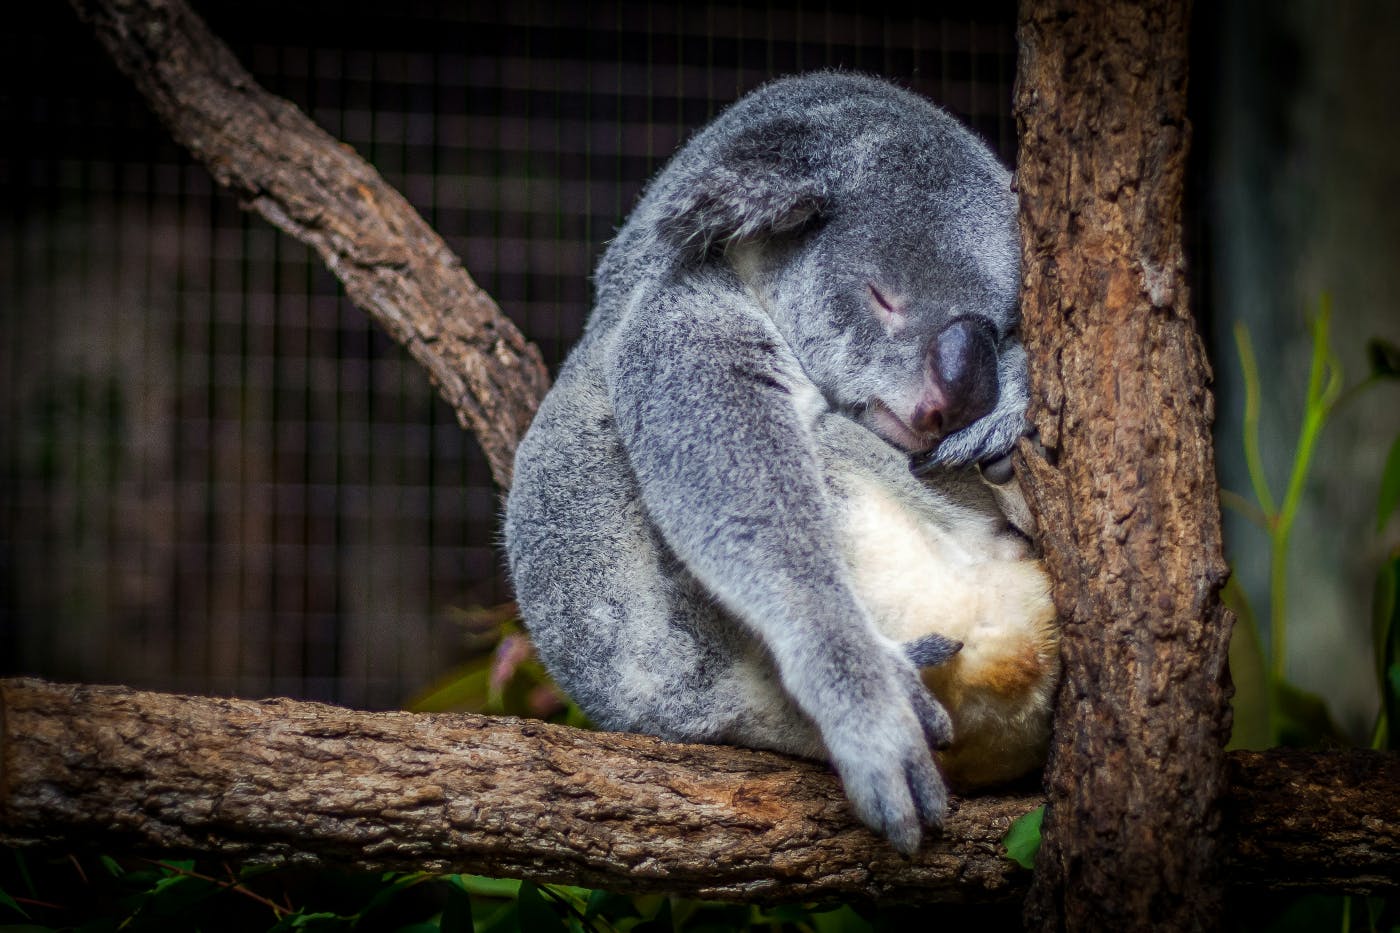 A Koala sleeping in a tree